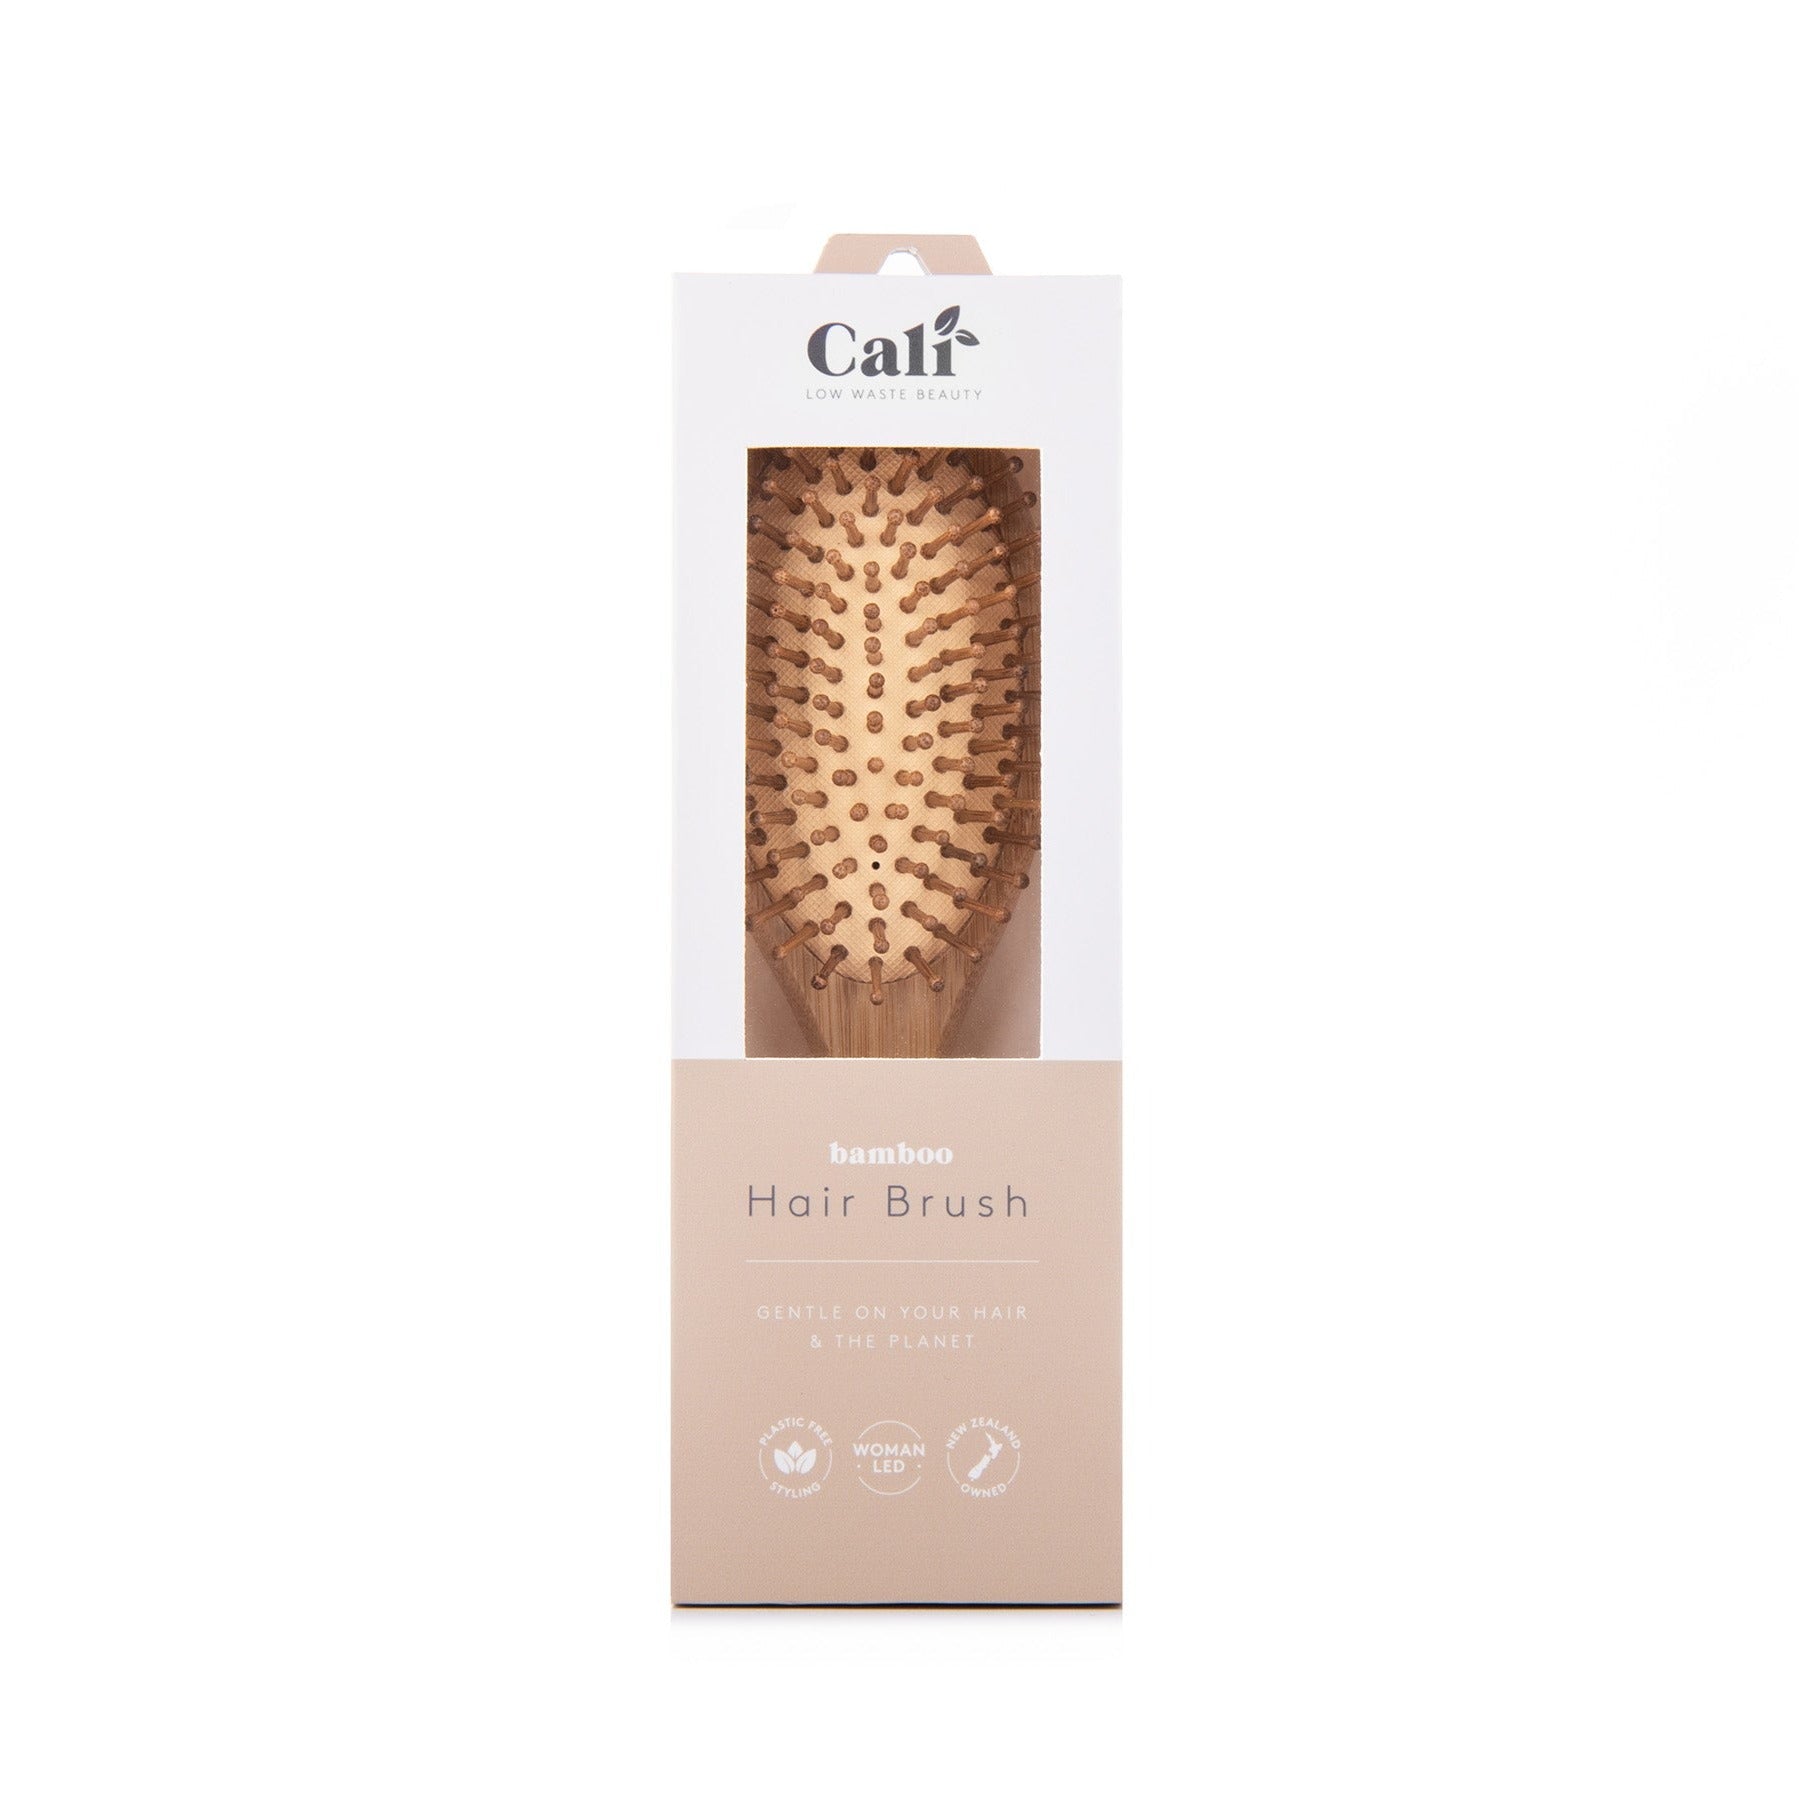 CAliwoods Bamboo Hair brush in retail box